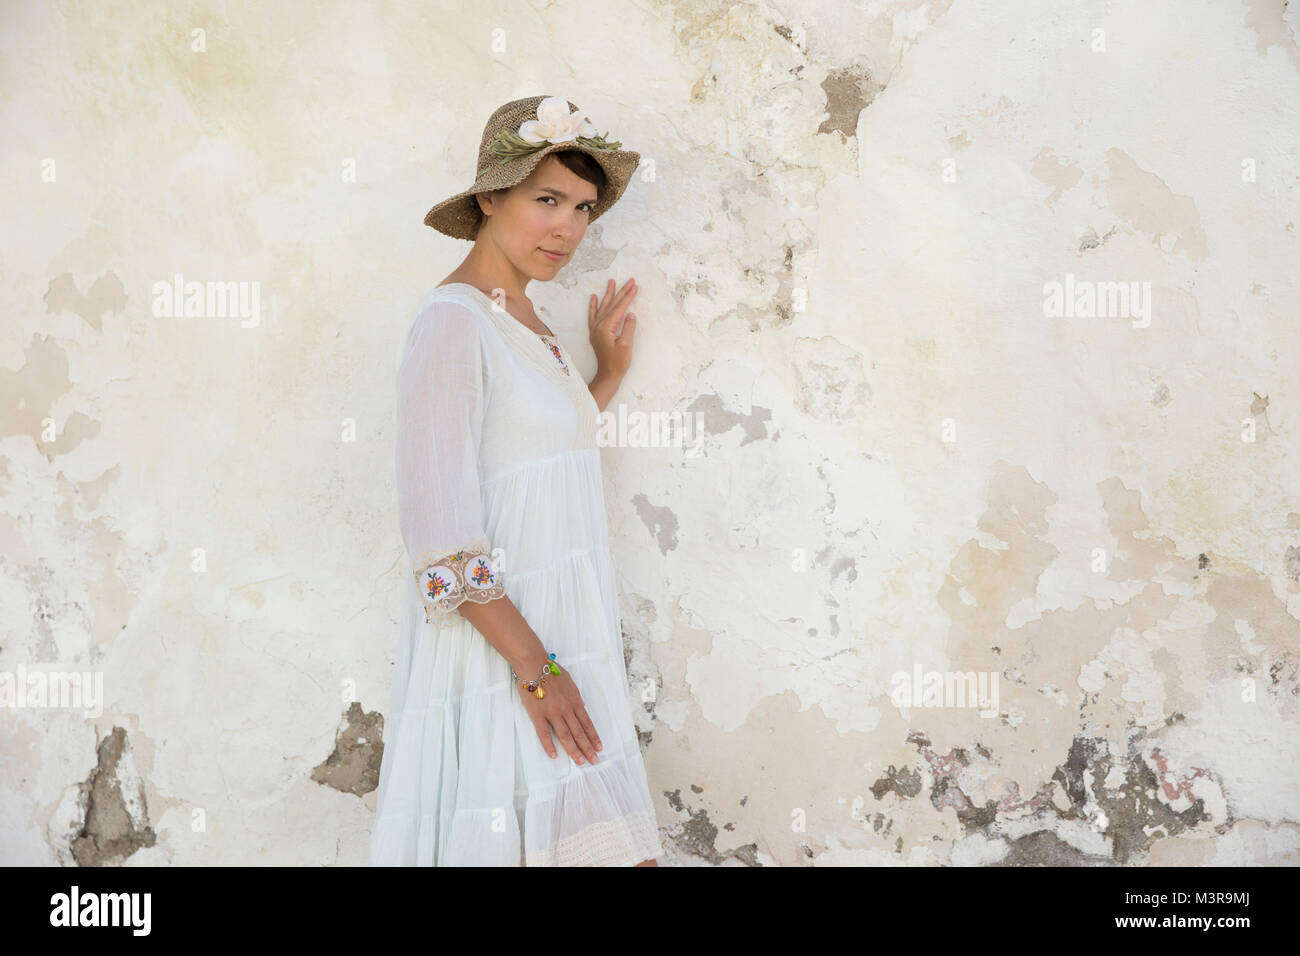 El italiano de moda de verano - joven mujer atractiva en un blanco y un sombrero de paja Fotografía de - Alamy